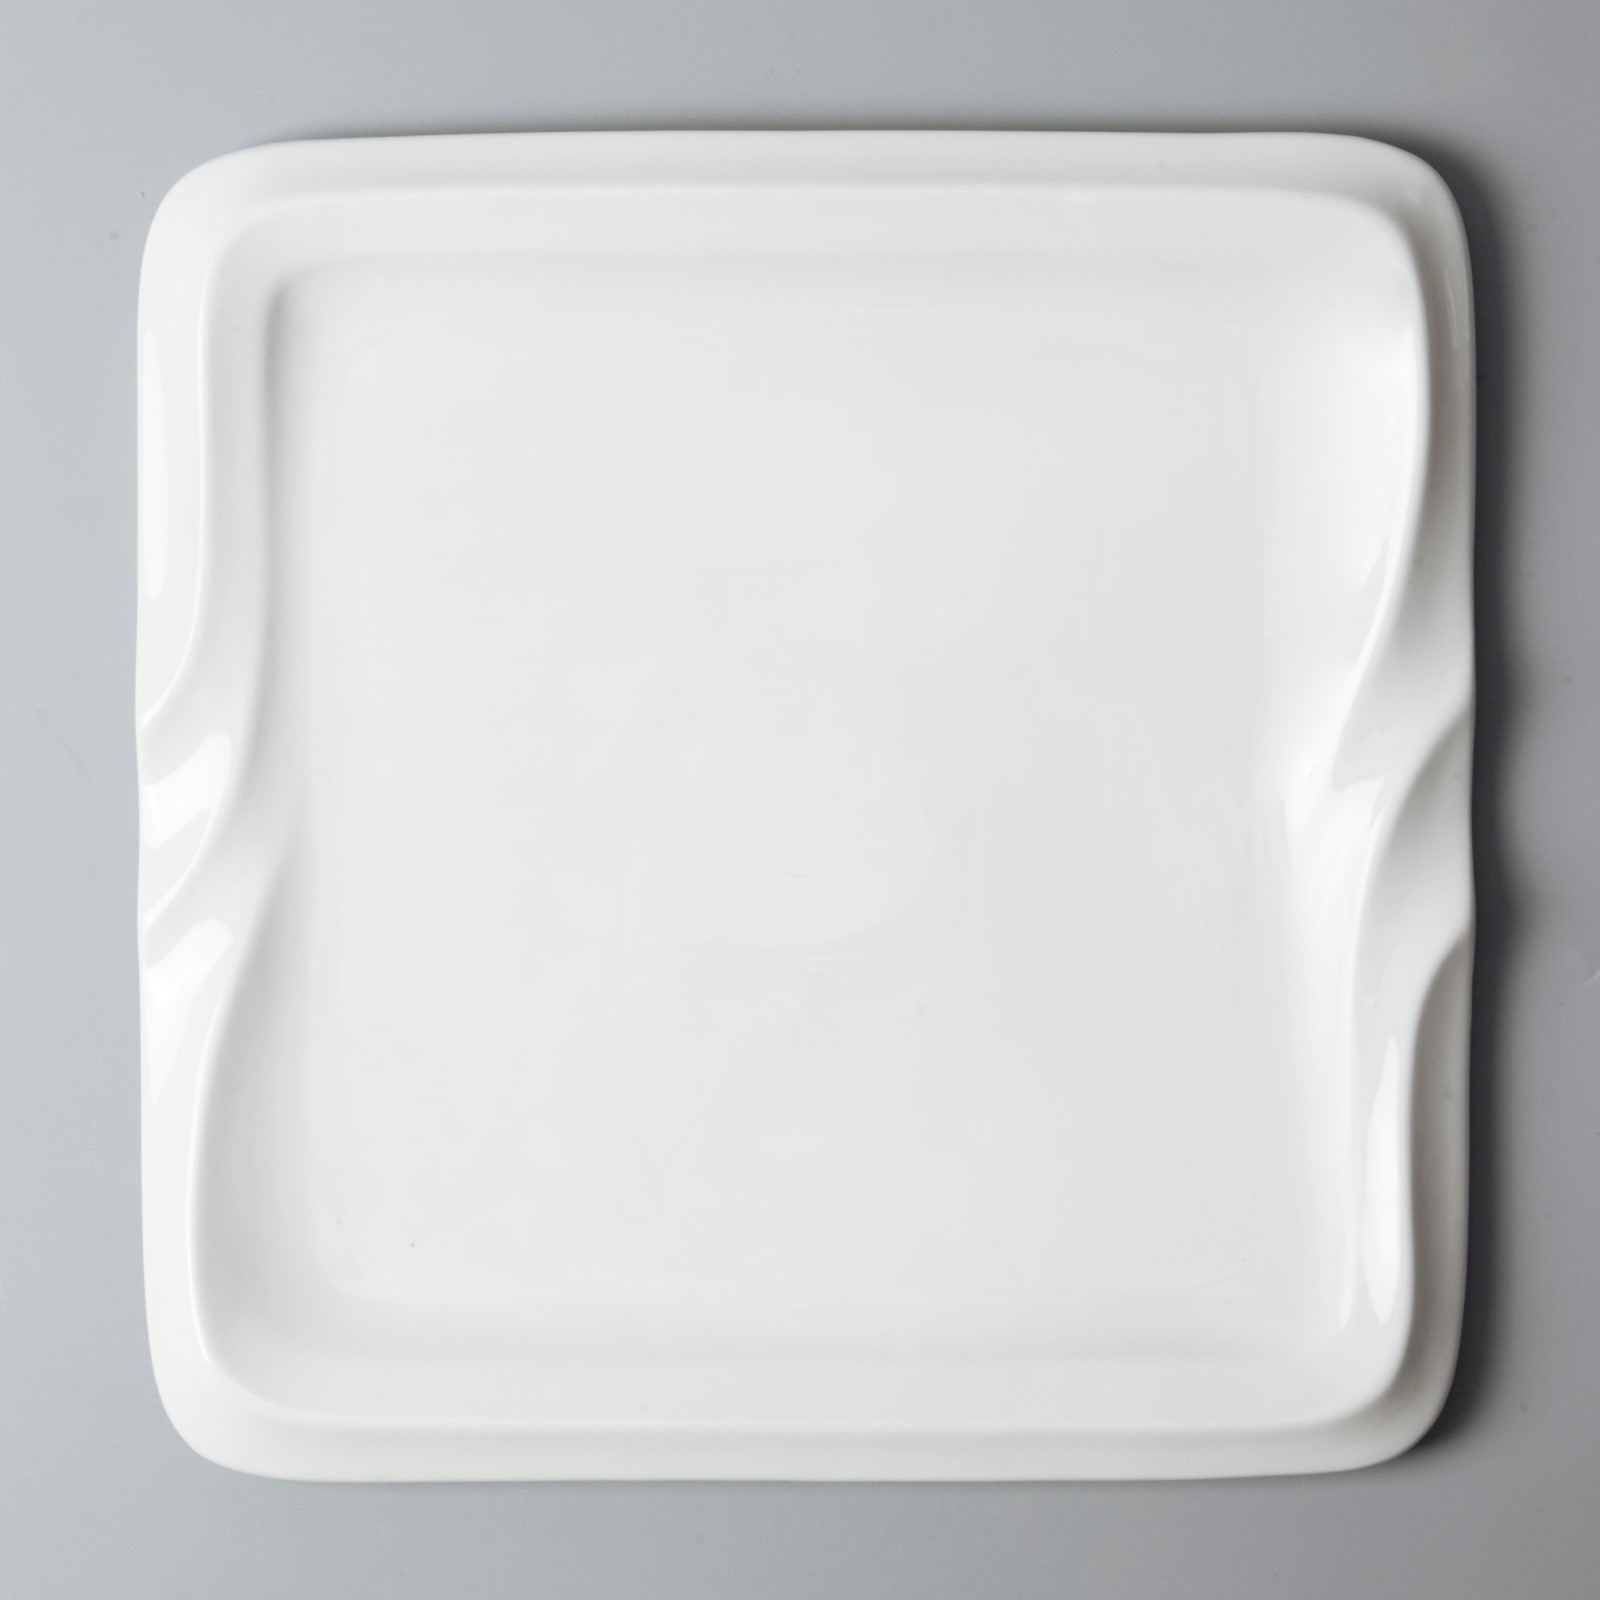 High-quality custom restaurant plates for business for dinner-12